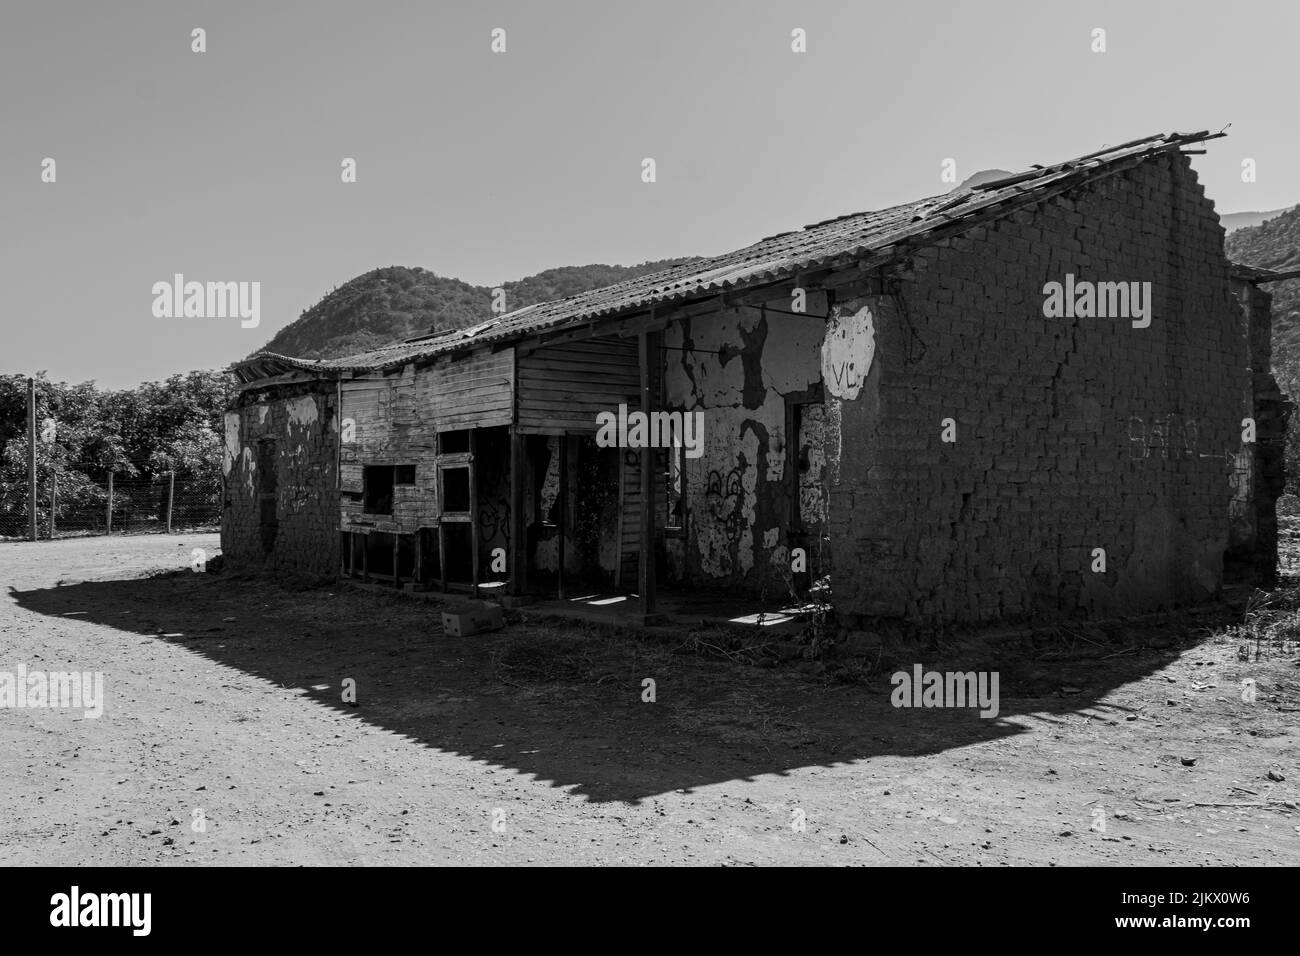 Un colpo in scala di grigi di una casa secolare nel comune di Cabildo in fessura, Cile Foto Stock